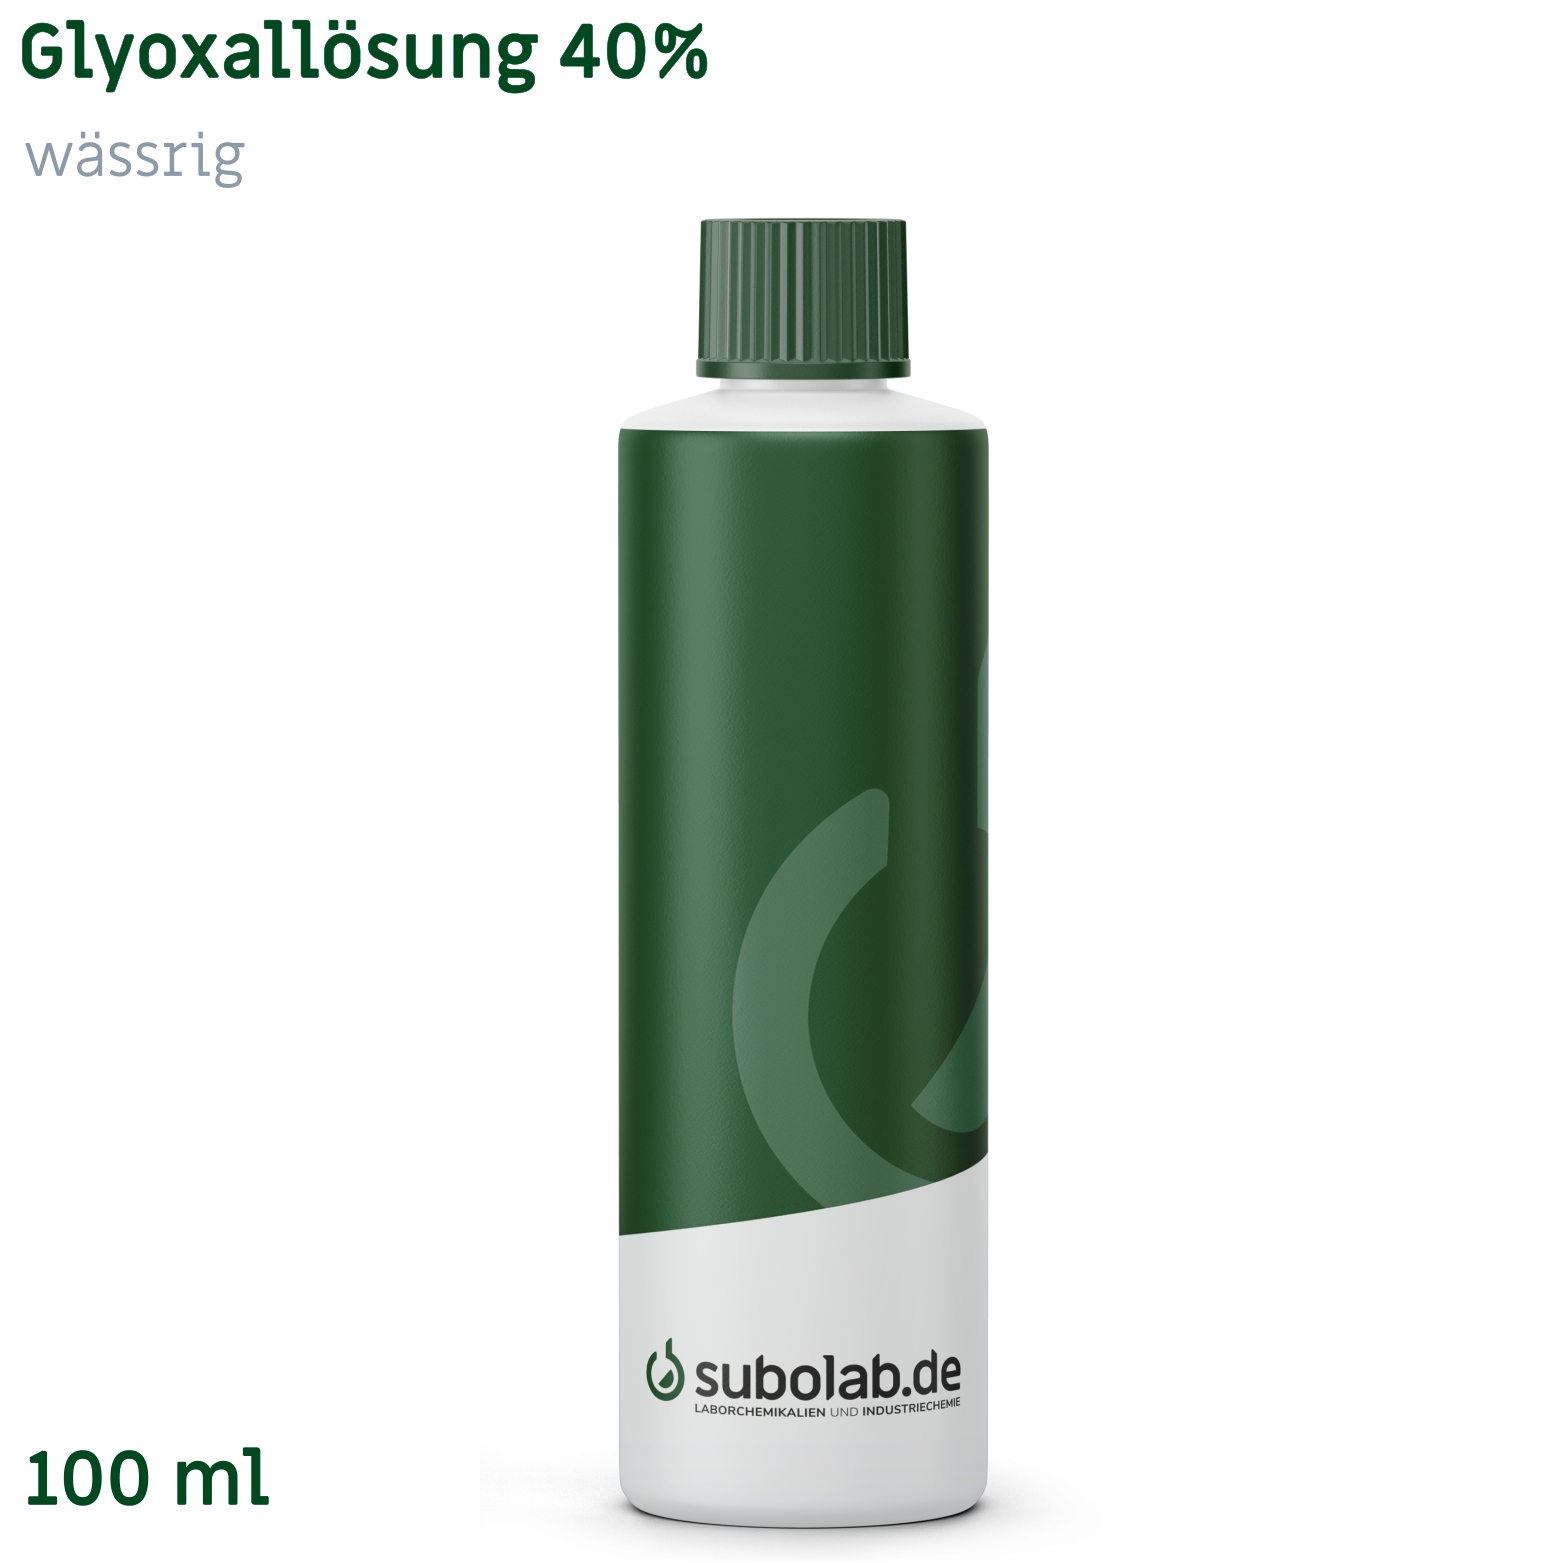 Bild von Glyoxallösung 40% wässrig (100 ml)